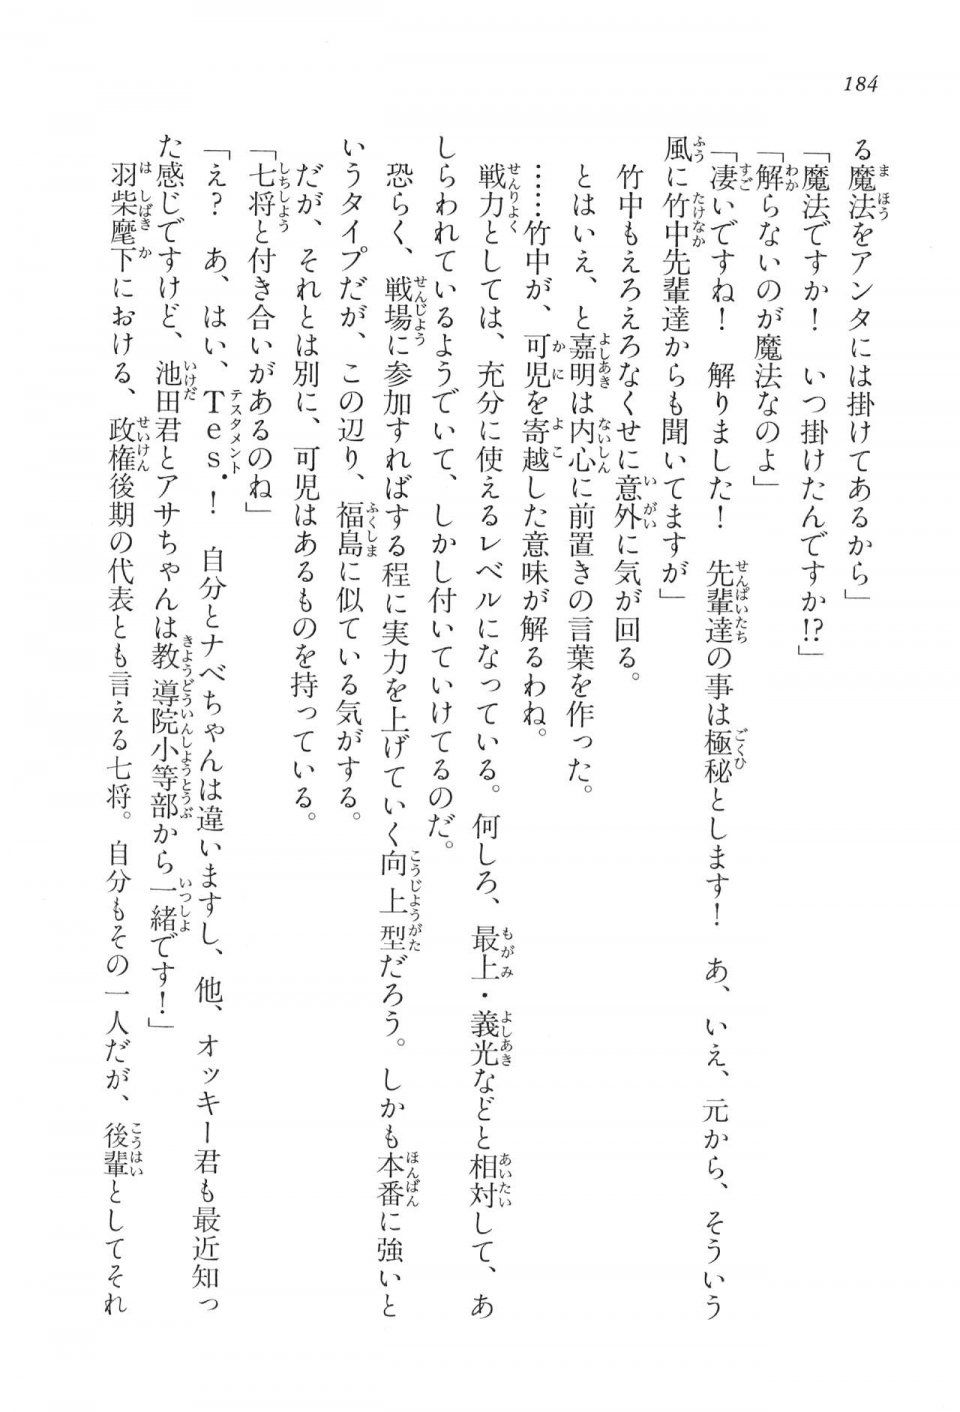 Kyoukai Senjou no Horizon LN Vol 16(7A) - Photo #184